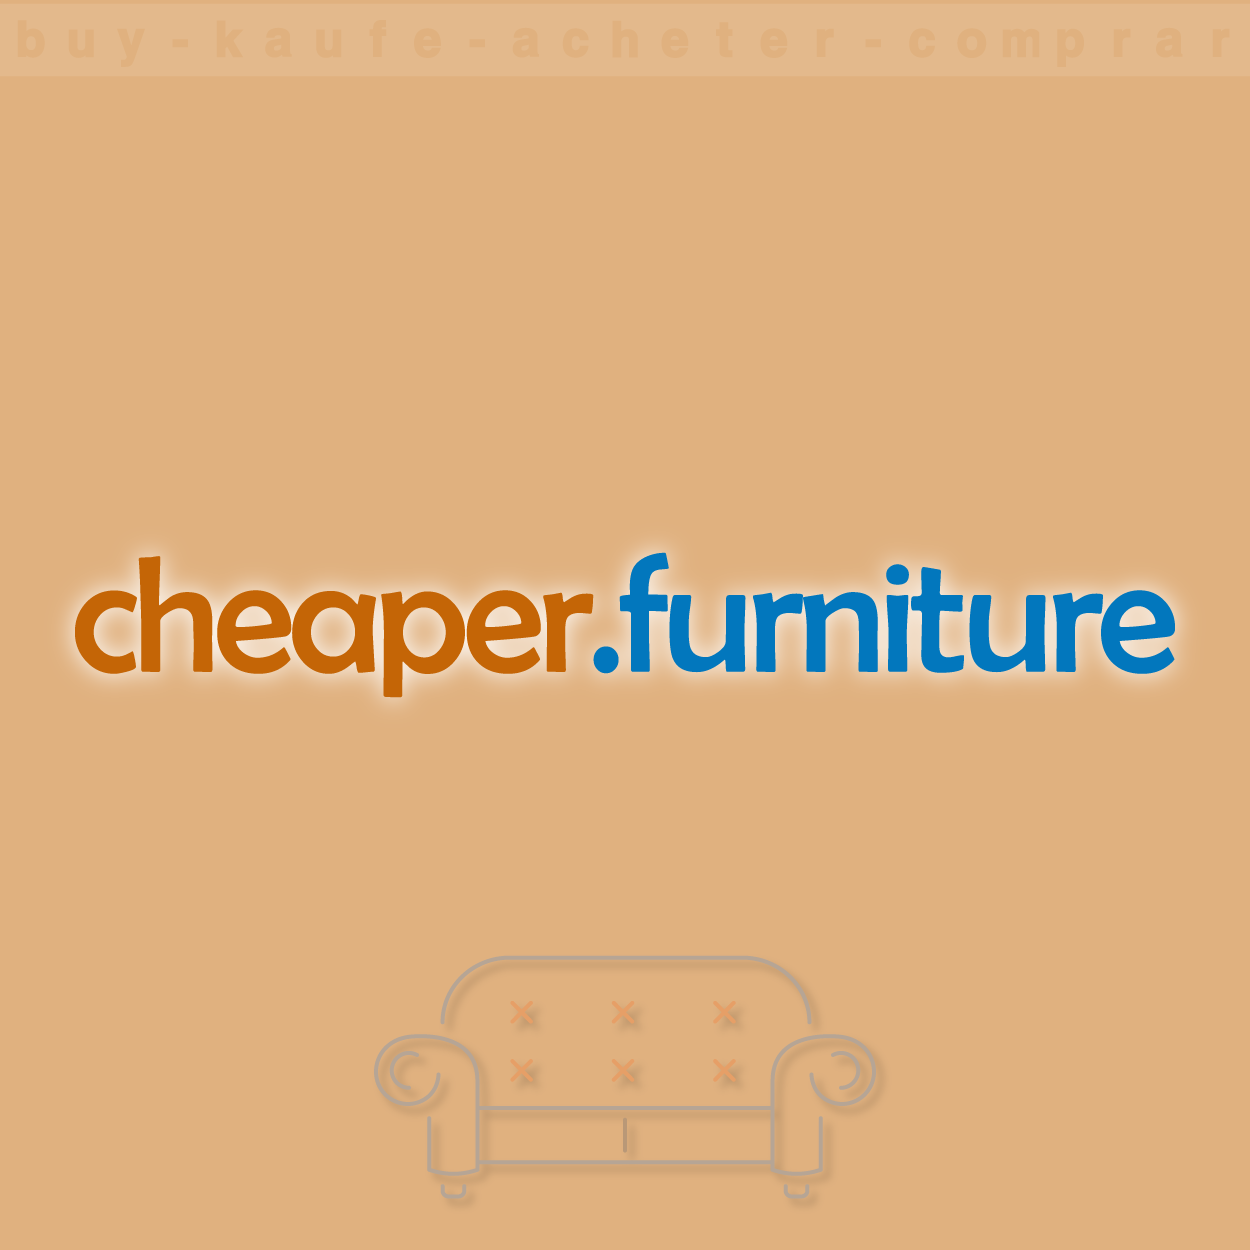 furniturecheaper.png